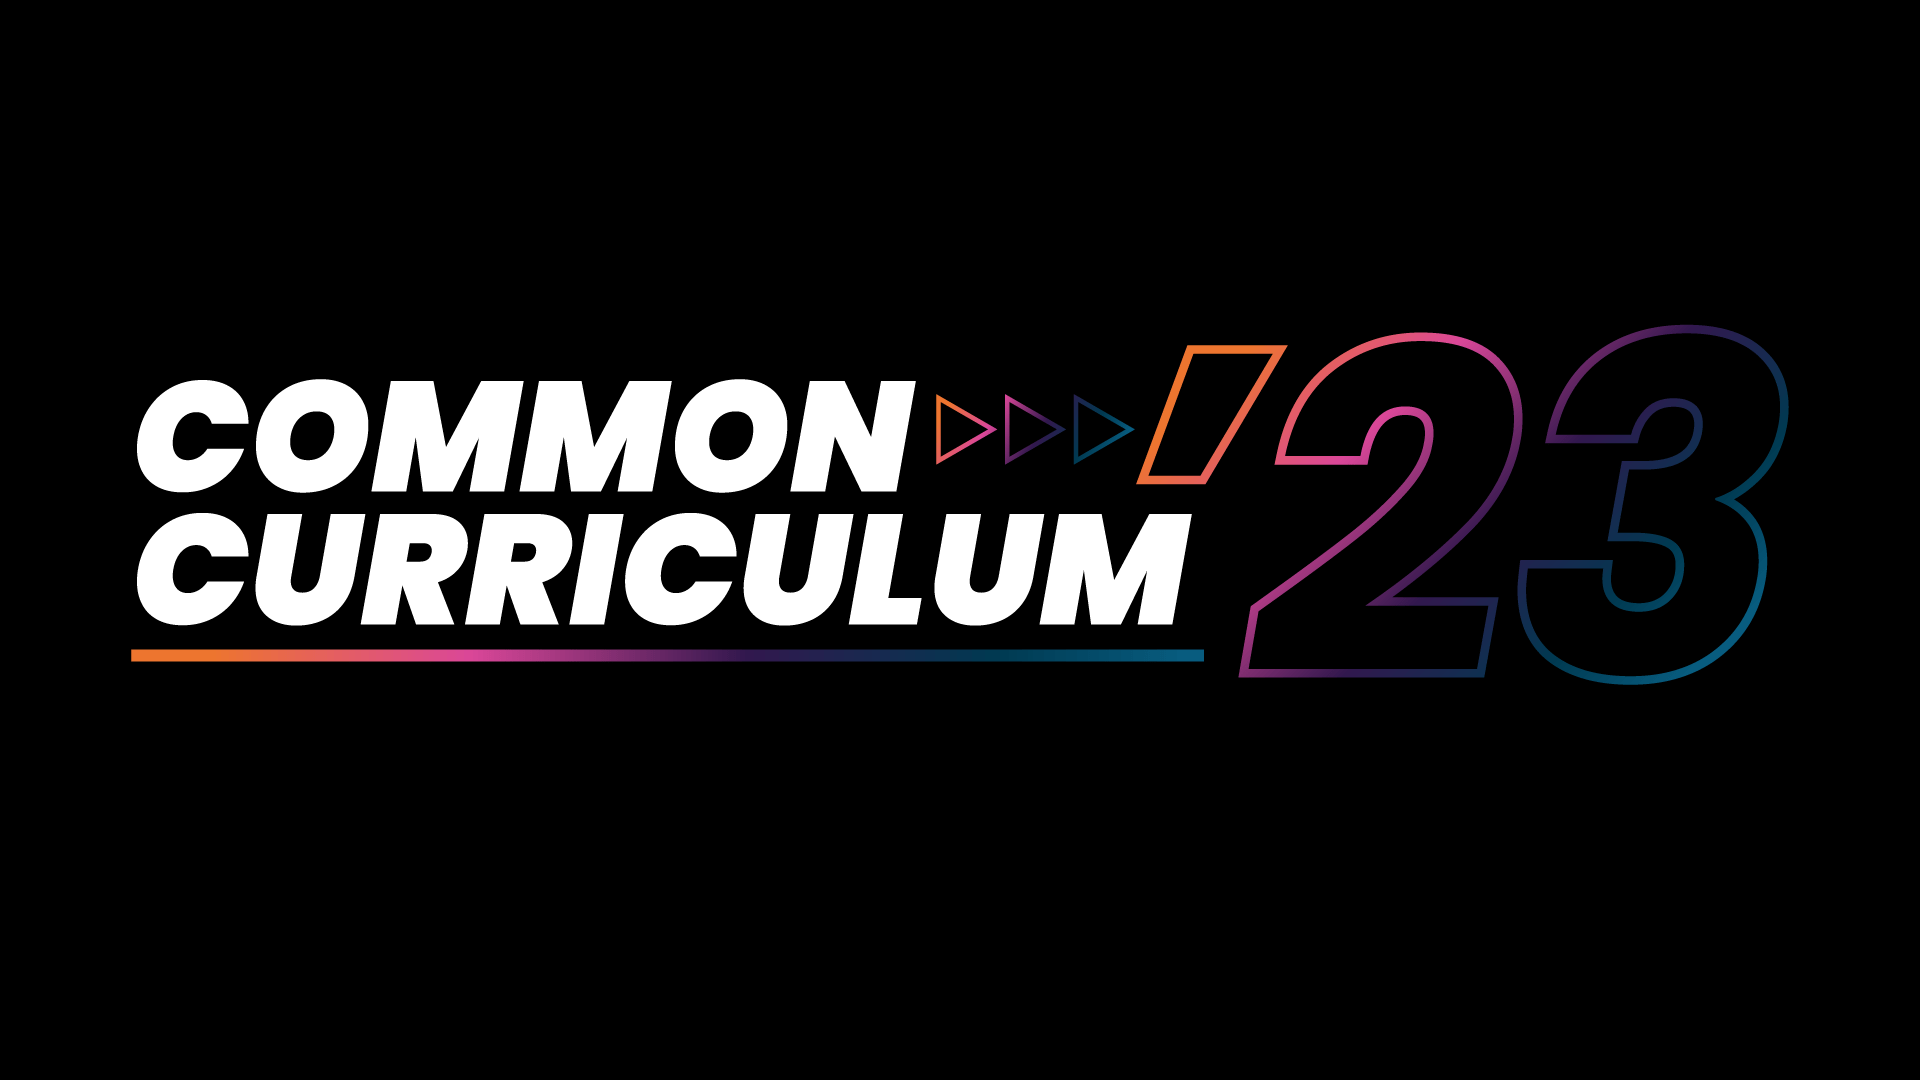 Common curriculum 23 graphic